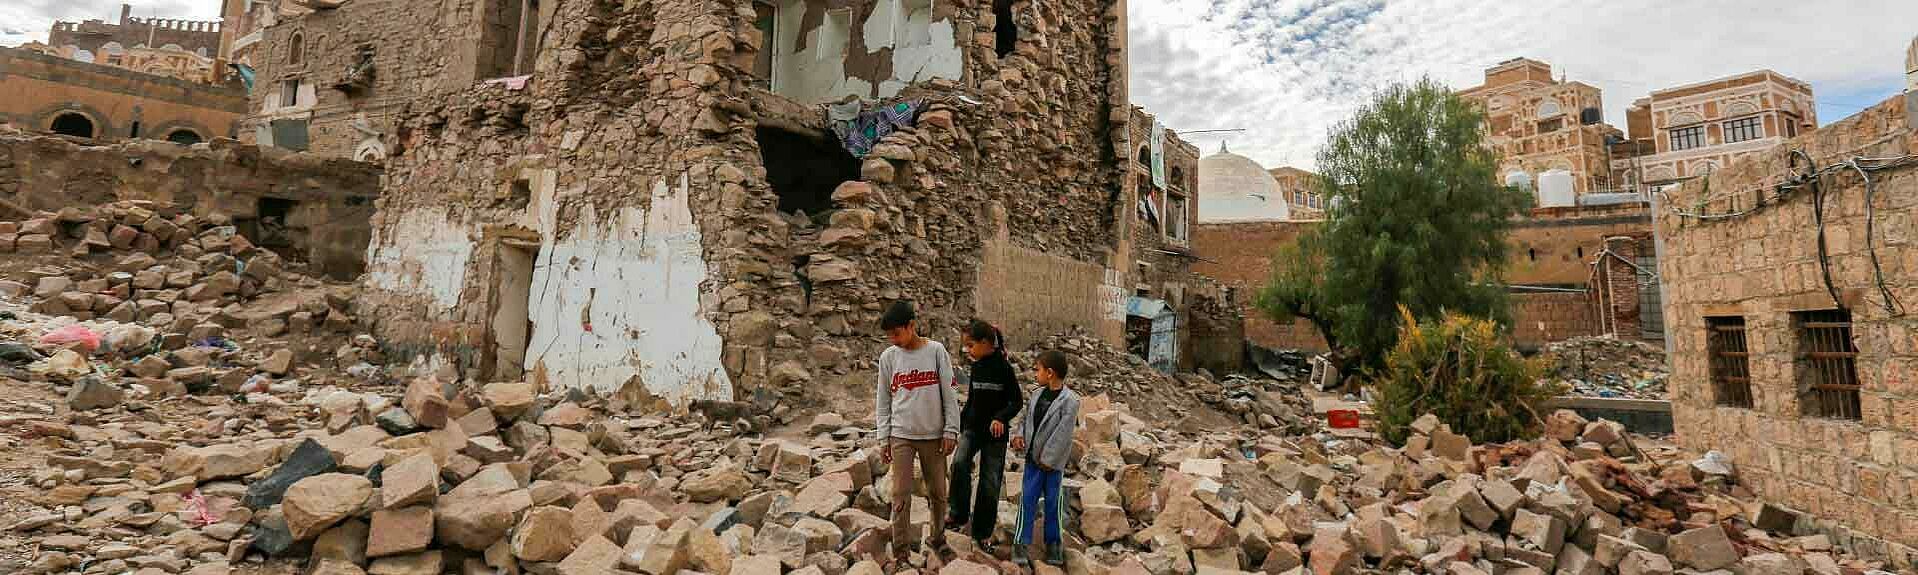 Bild der Zerstörung im Jemen.